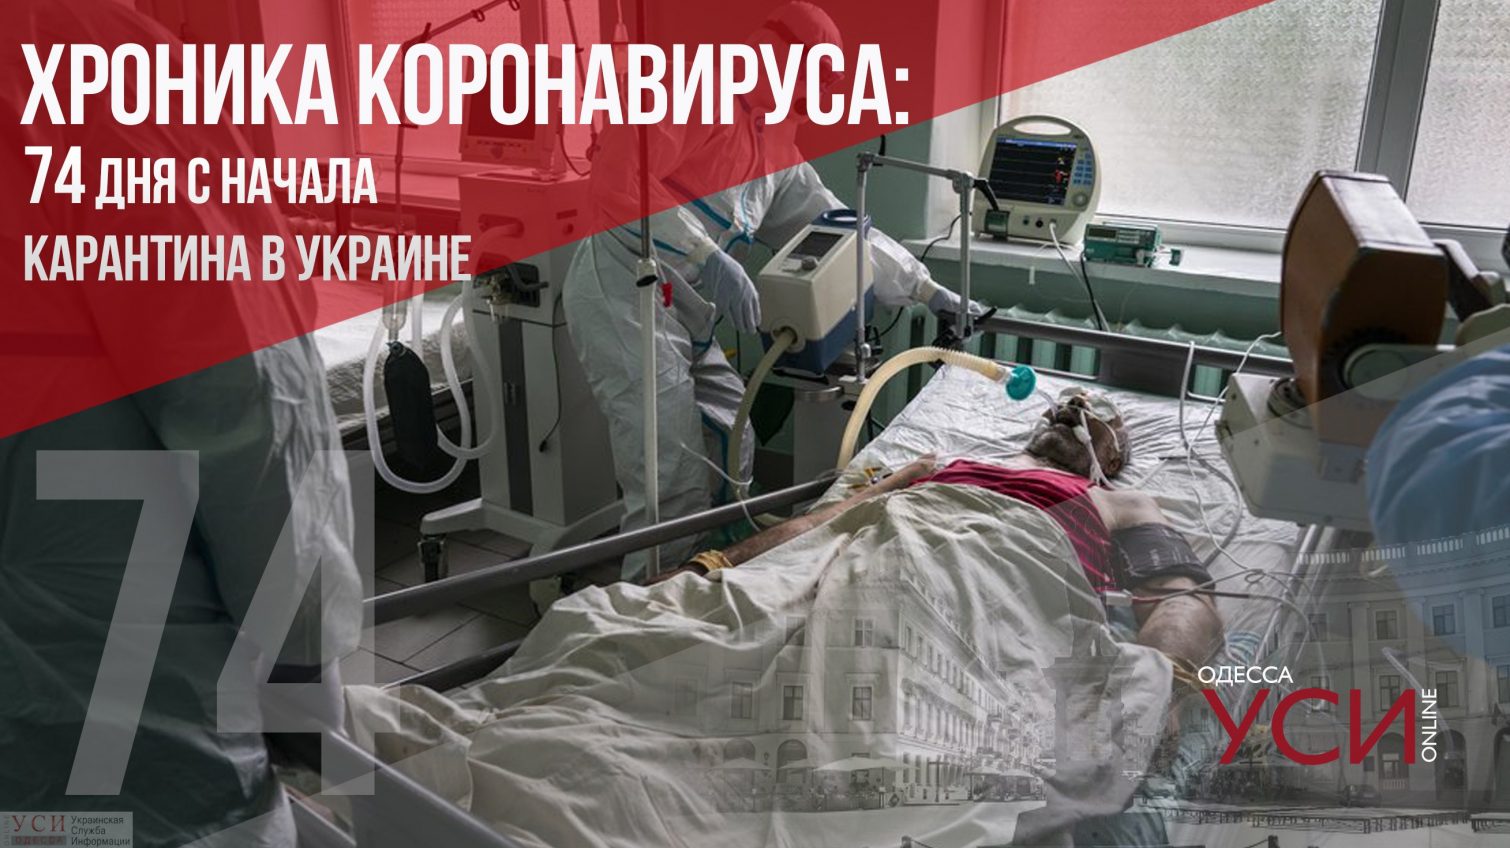 Хроника коронавируса: 74 день карантина в Украине ОБНОВЛЯЕТСЯ «фото»